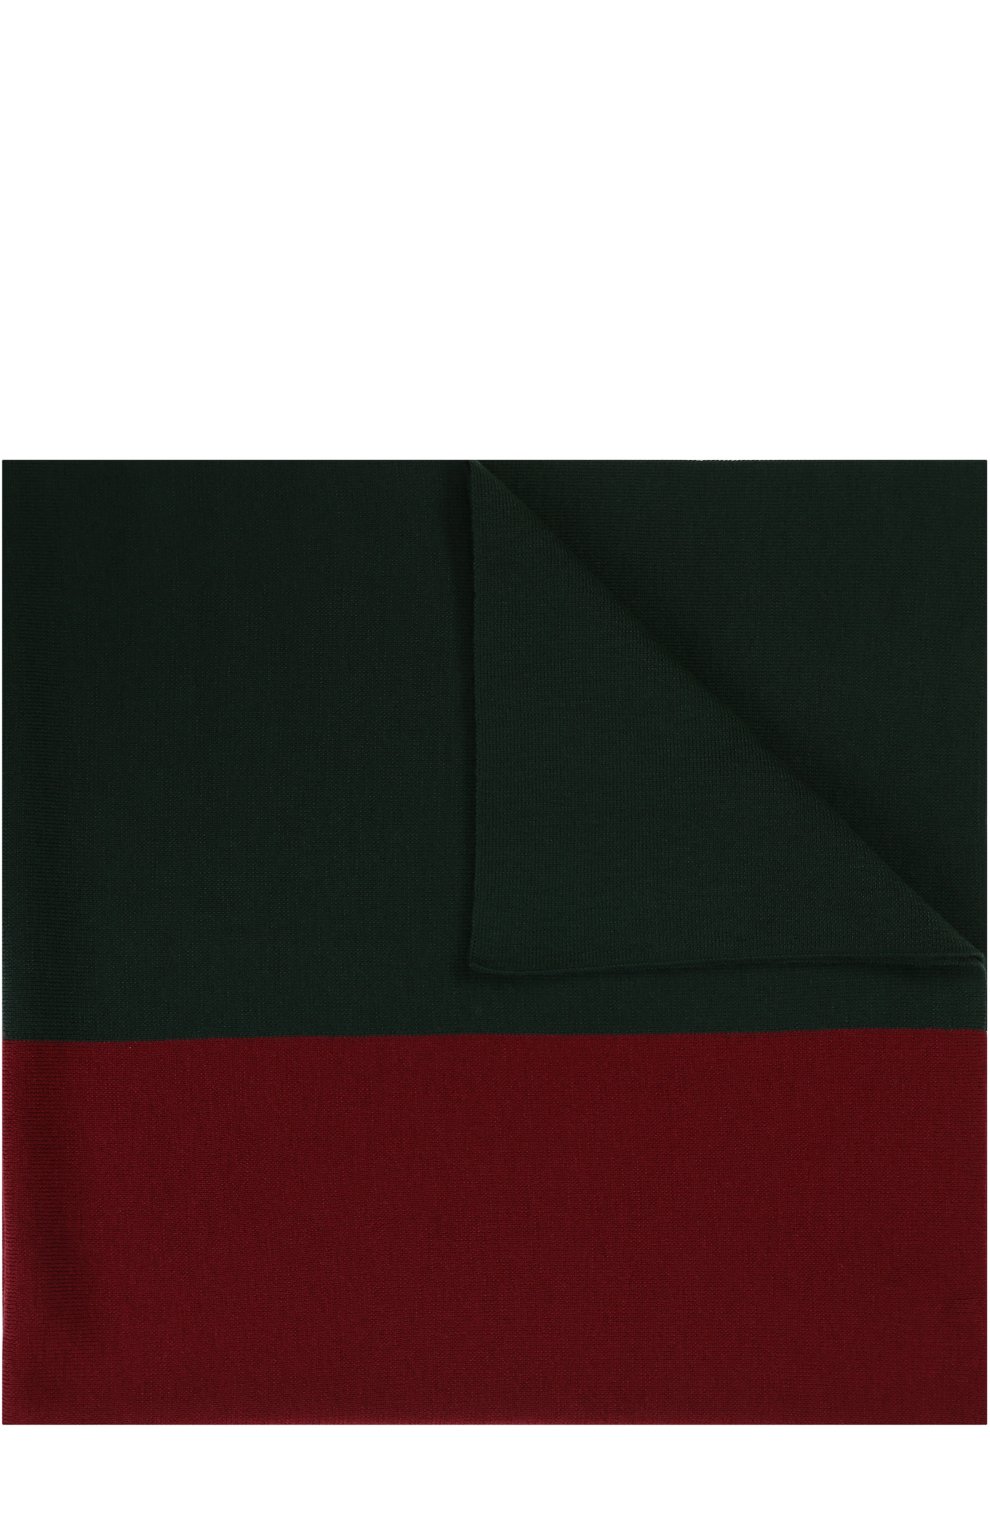 Постельные принадлежности Gucci, Шерстяное одеяло с логотипом бренда Gucci, Италия, Зелёный, Шерсть: 100%;, 2301713  - купить